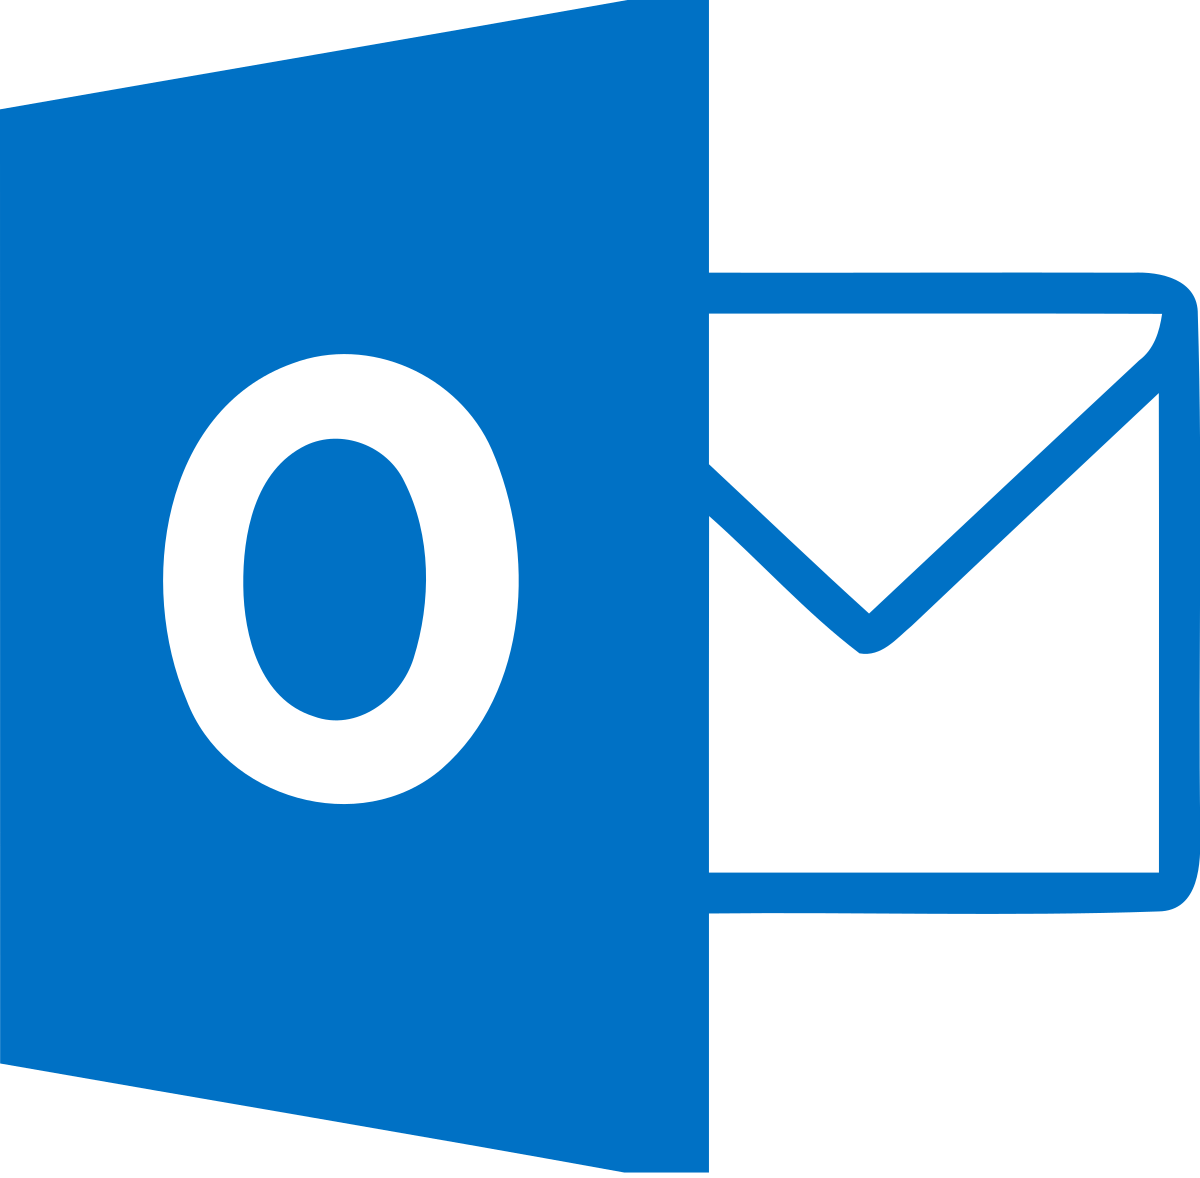 Microsoft outlook logo